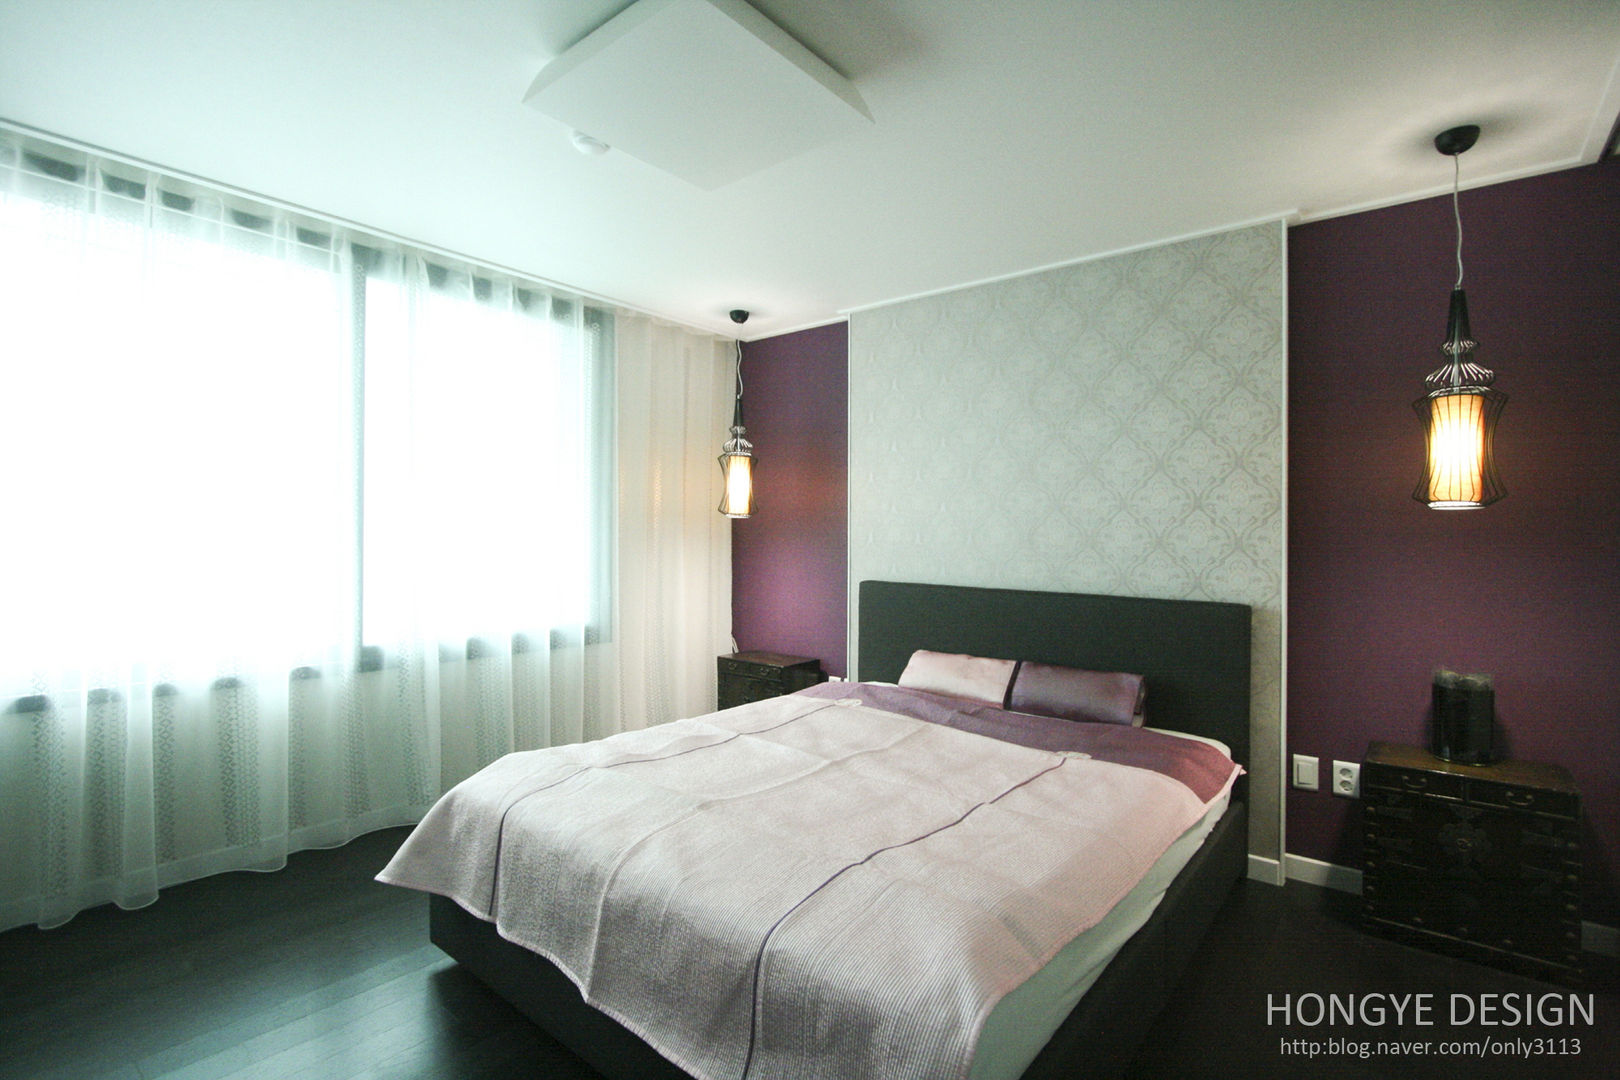 고가구의 적절한 배치, 오리엔탈 느낌의 32py 인테리어, 홍예디자인 홍예디자인 Asian style bedroom